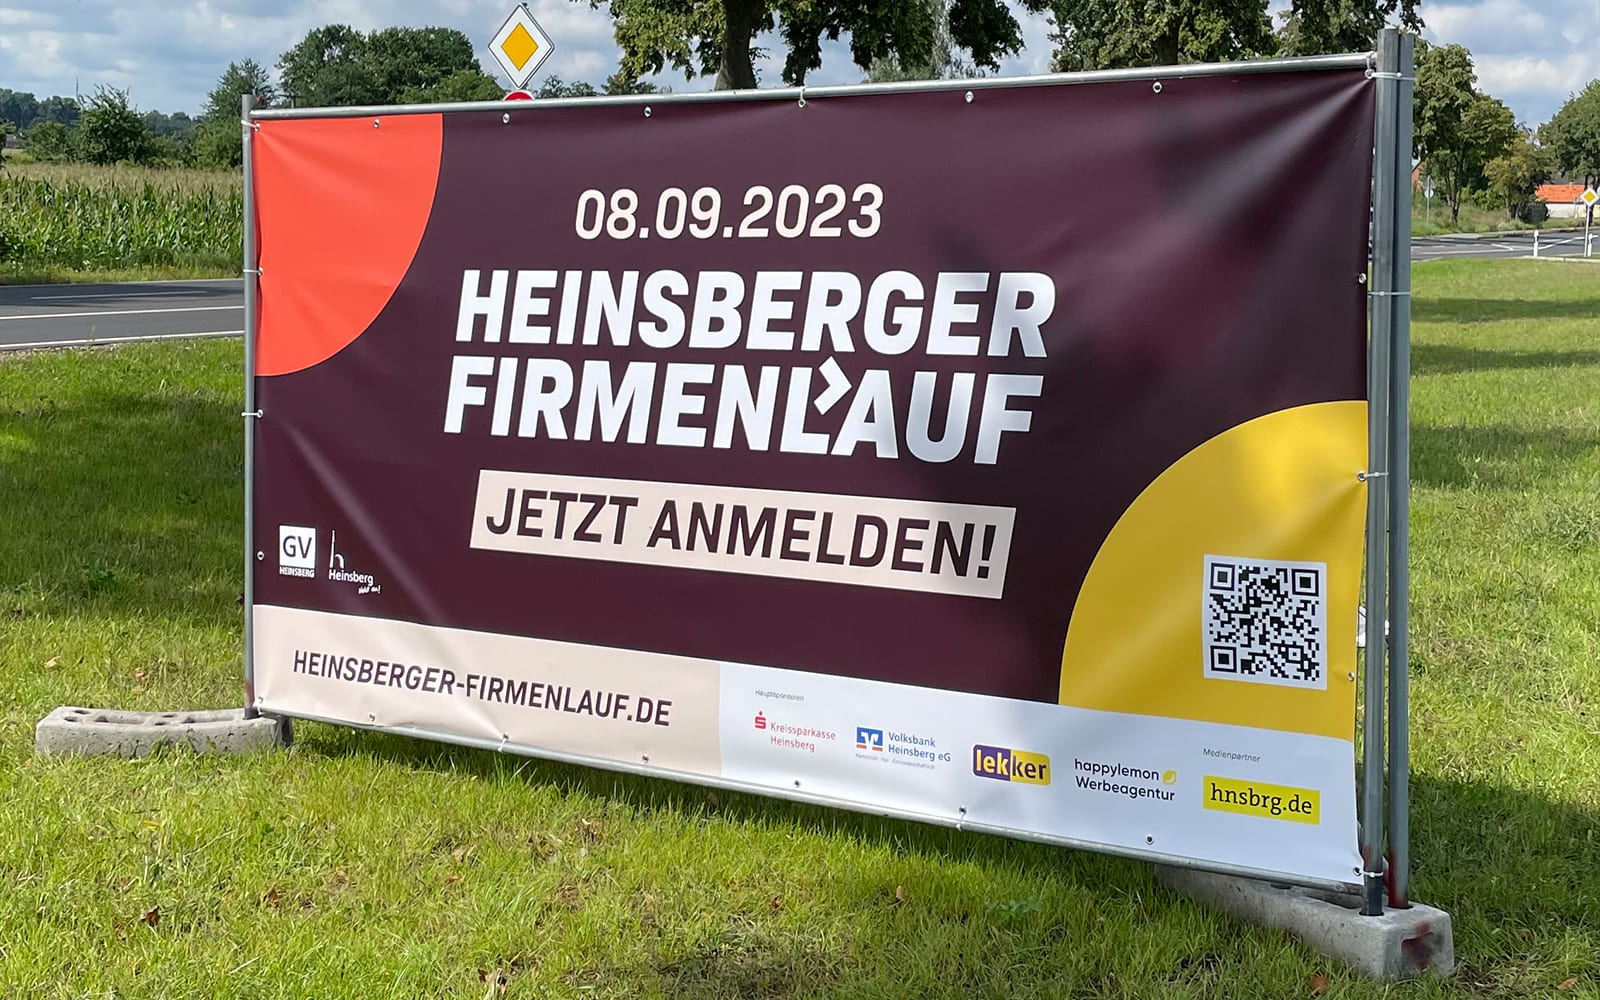 Heinsberger Firmenlauf: Die Spannung steigt - Vorbereitungen laufen auf Hochtouren